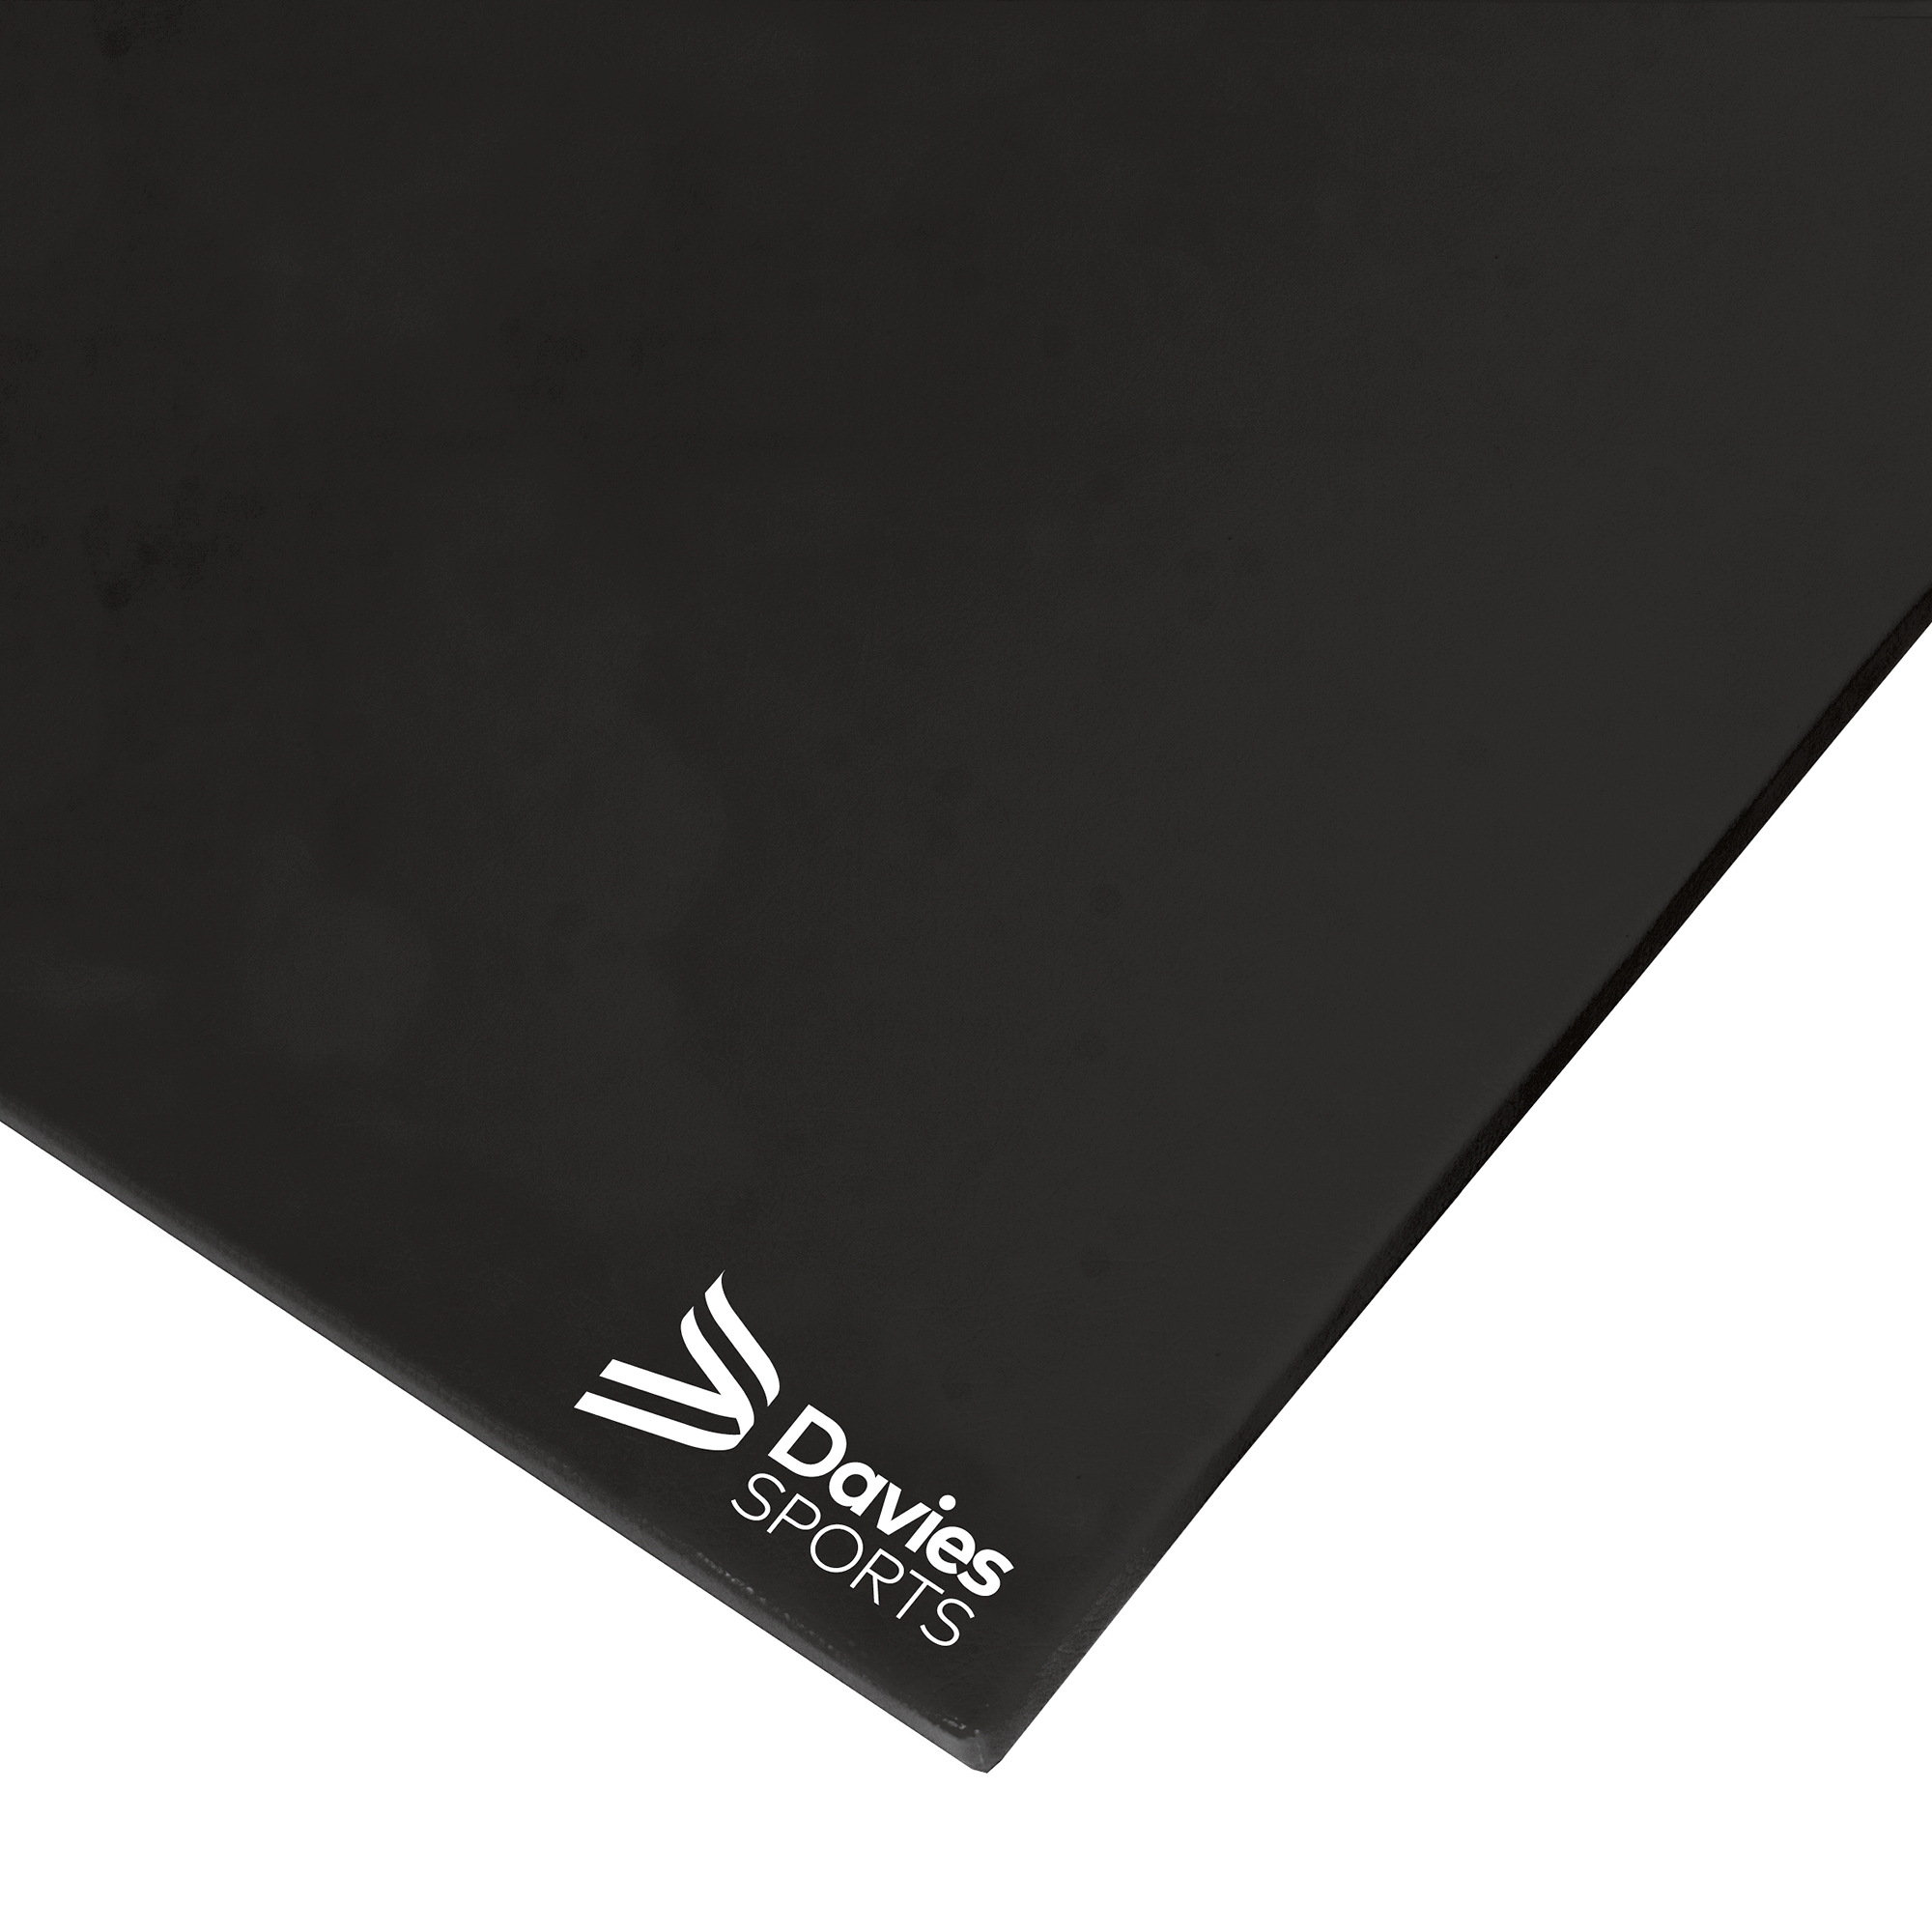 Davies Sports Lightweight Gym Mat Standard Black Link-a-Lay - 1.83m x 1.22m x 25mm